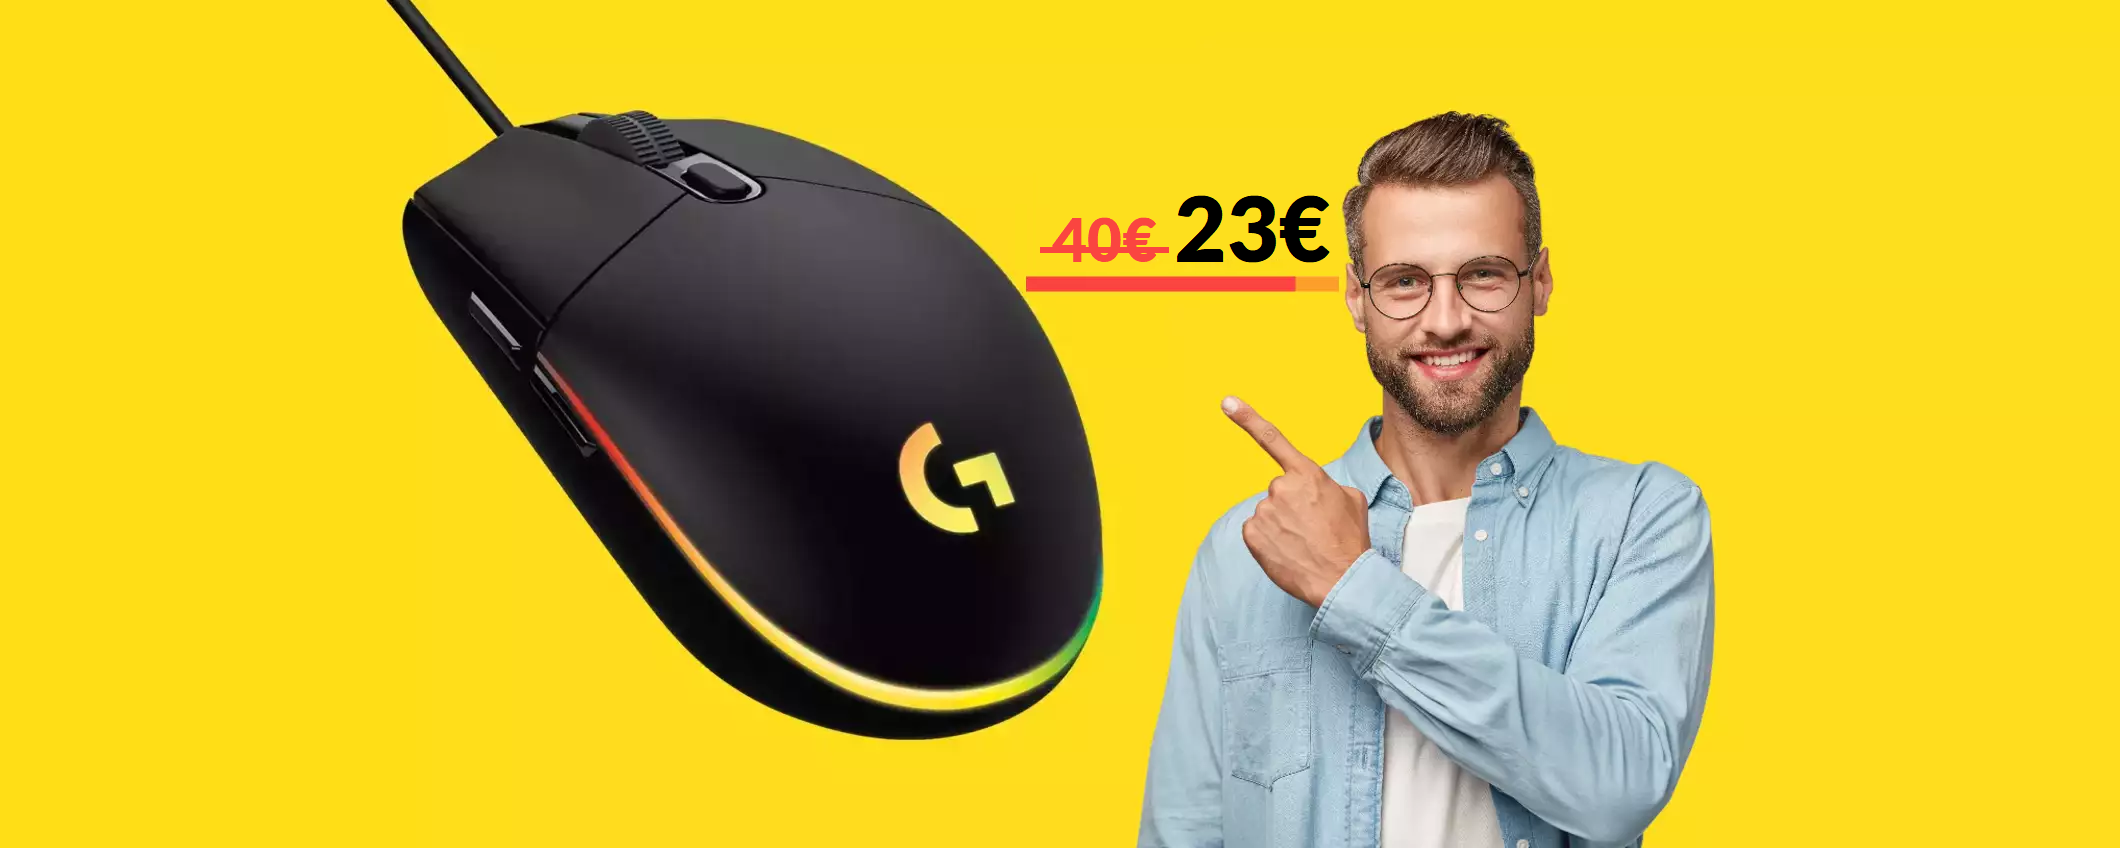 Mouse gaming Logitech: già tuo a 23€ con le Offerte di Primavera